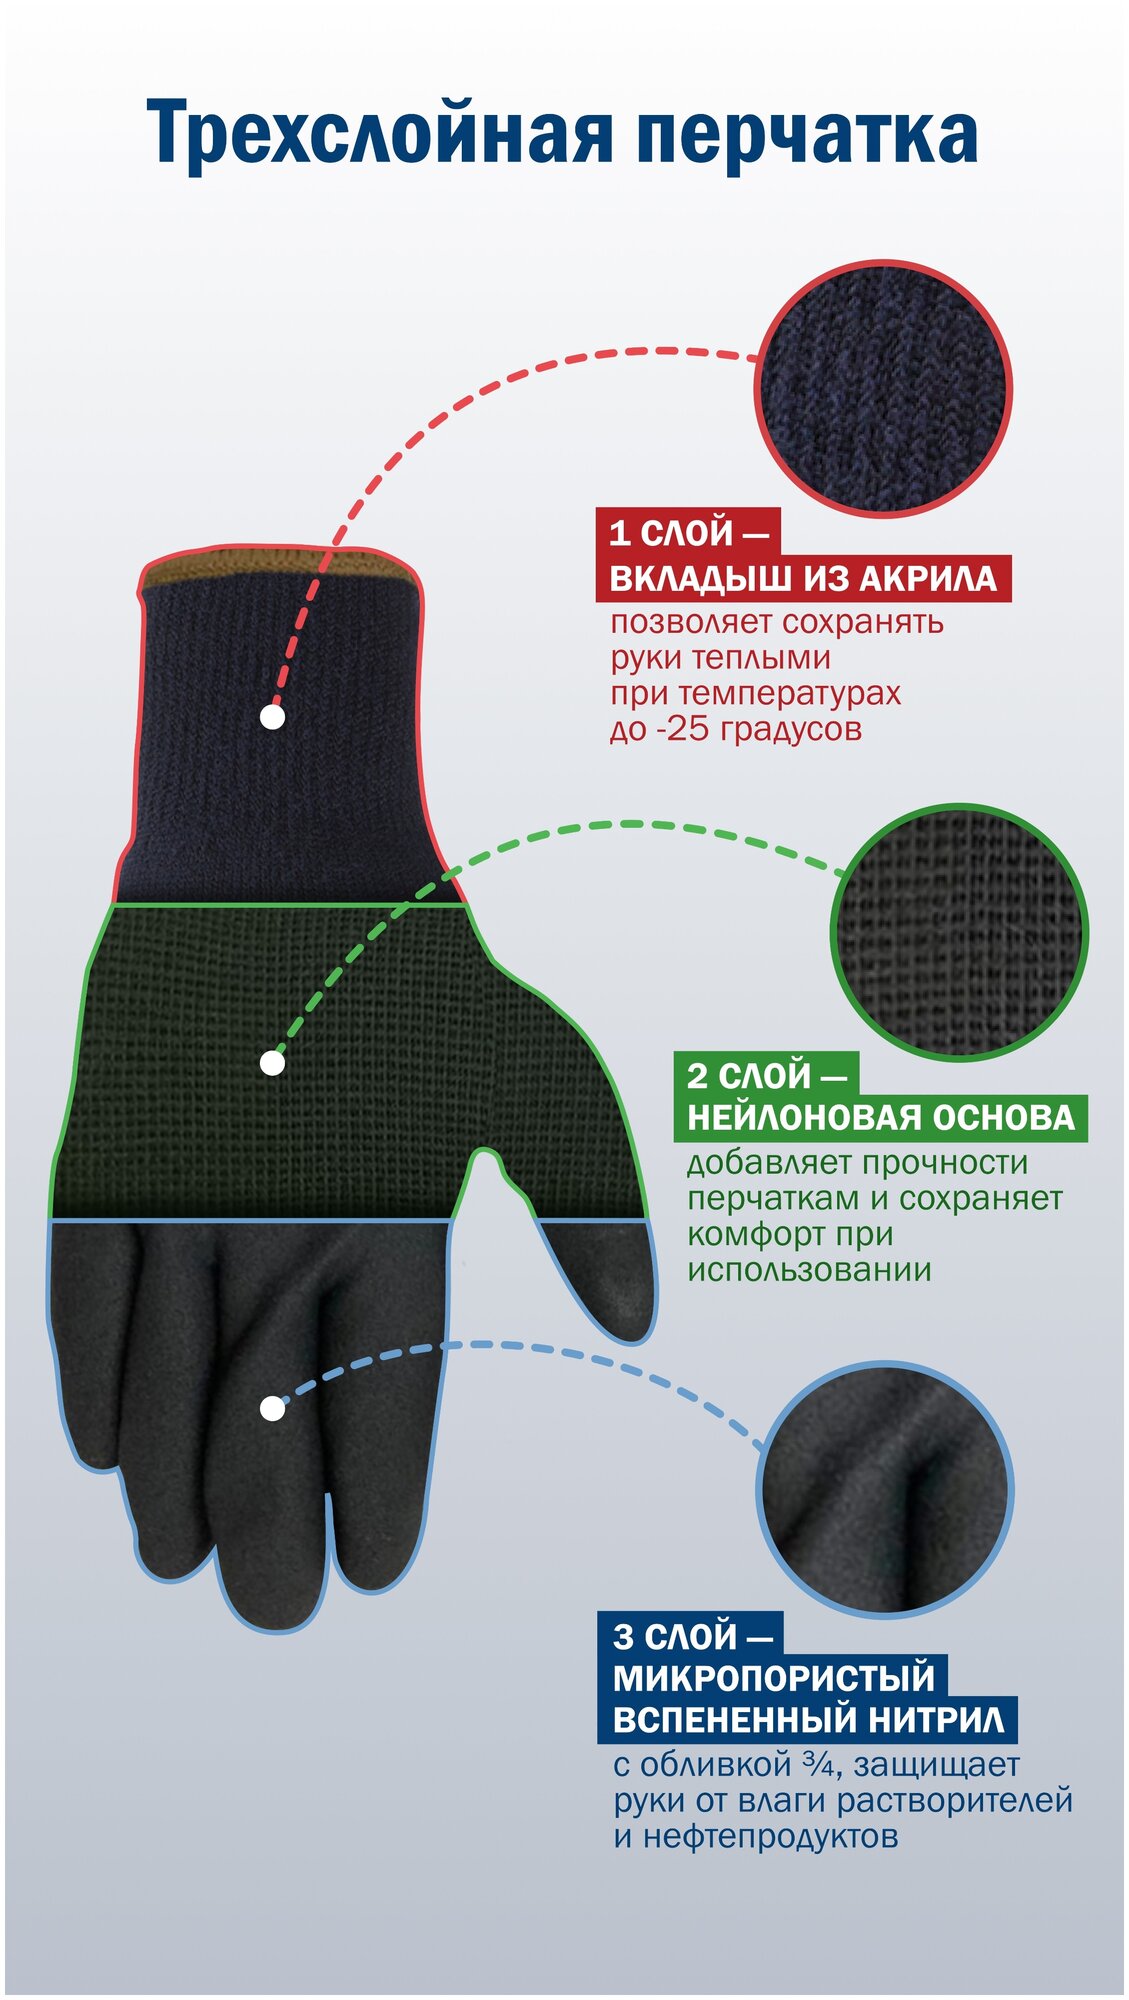 Двойные зимние рабочие перчатки Gward с начёсом и вспененным нитрилом